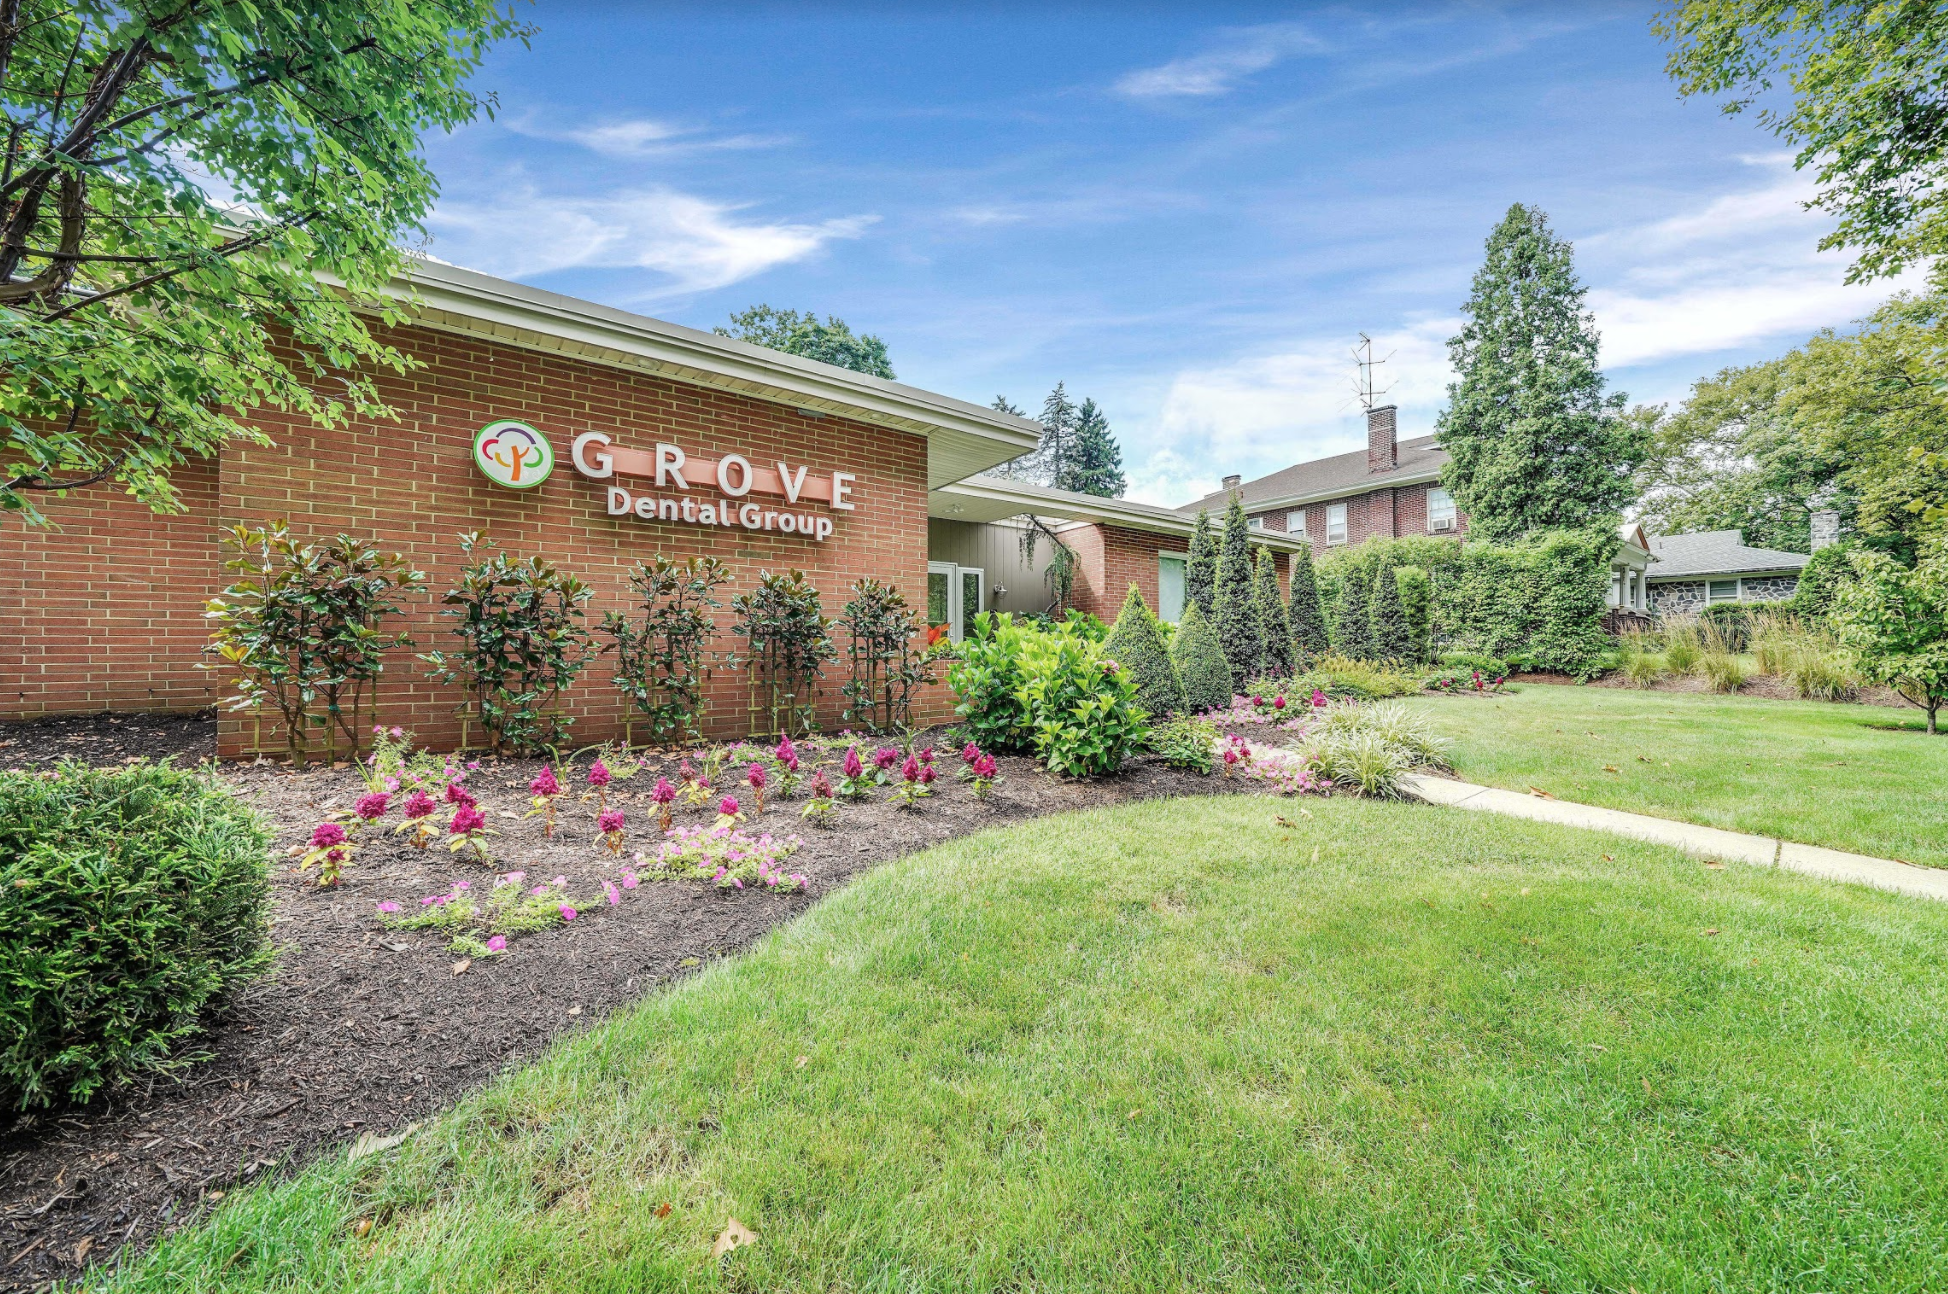 Grove Dental Group – On the Avenue